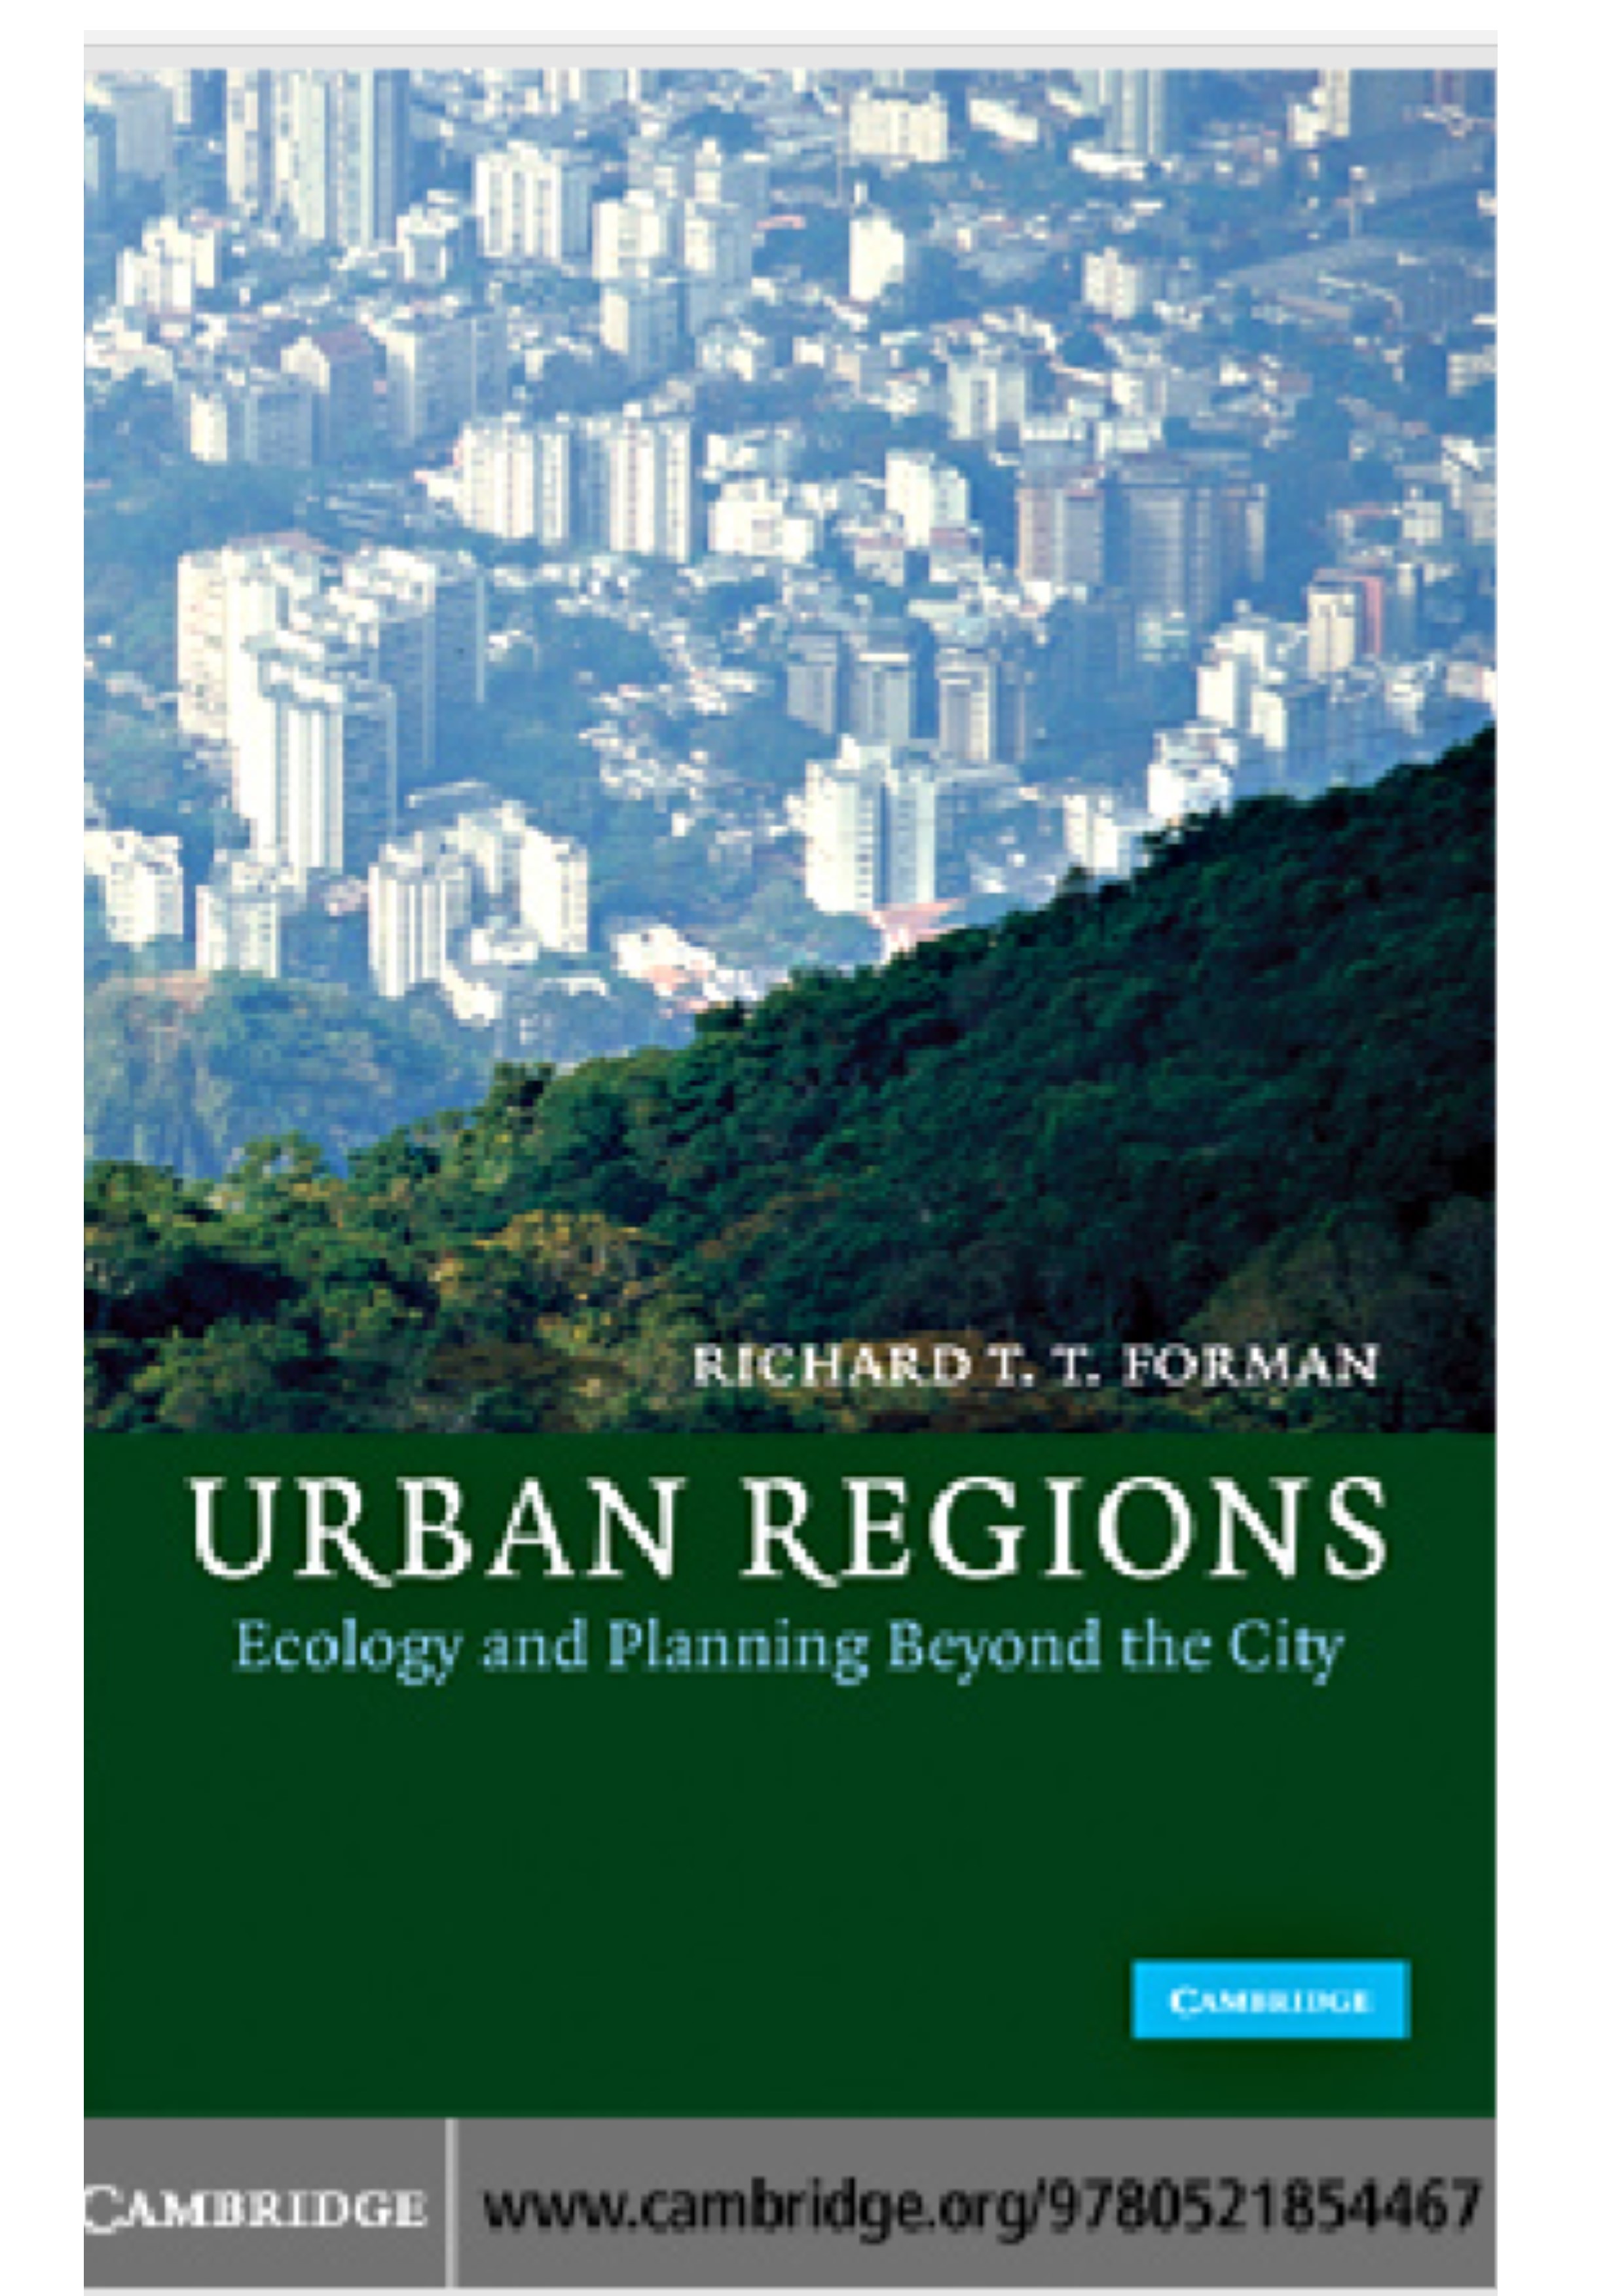 Urban Region